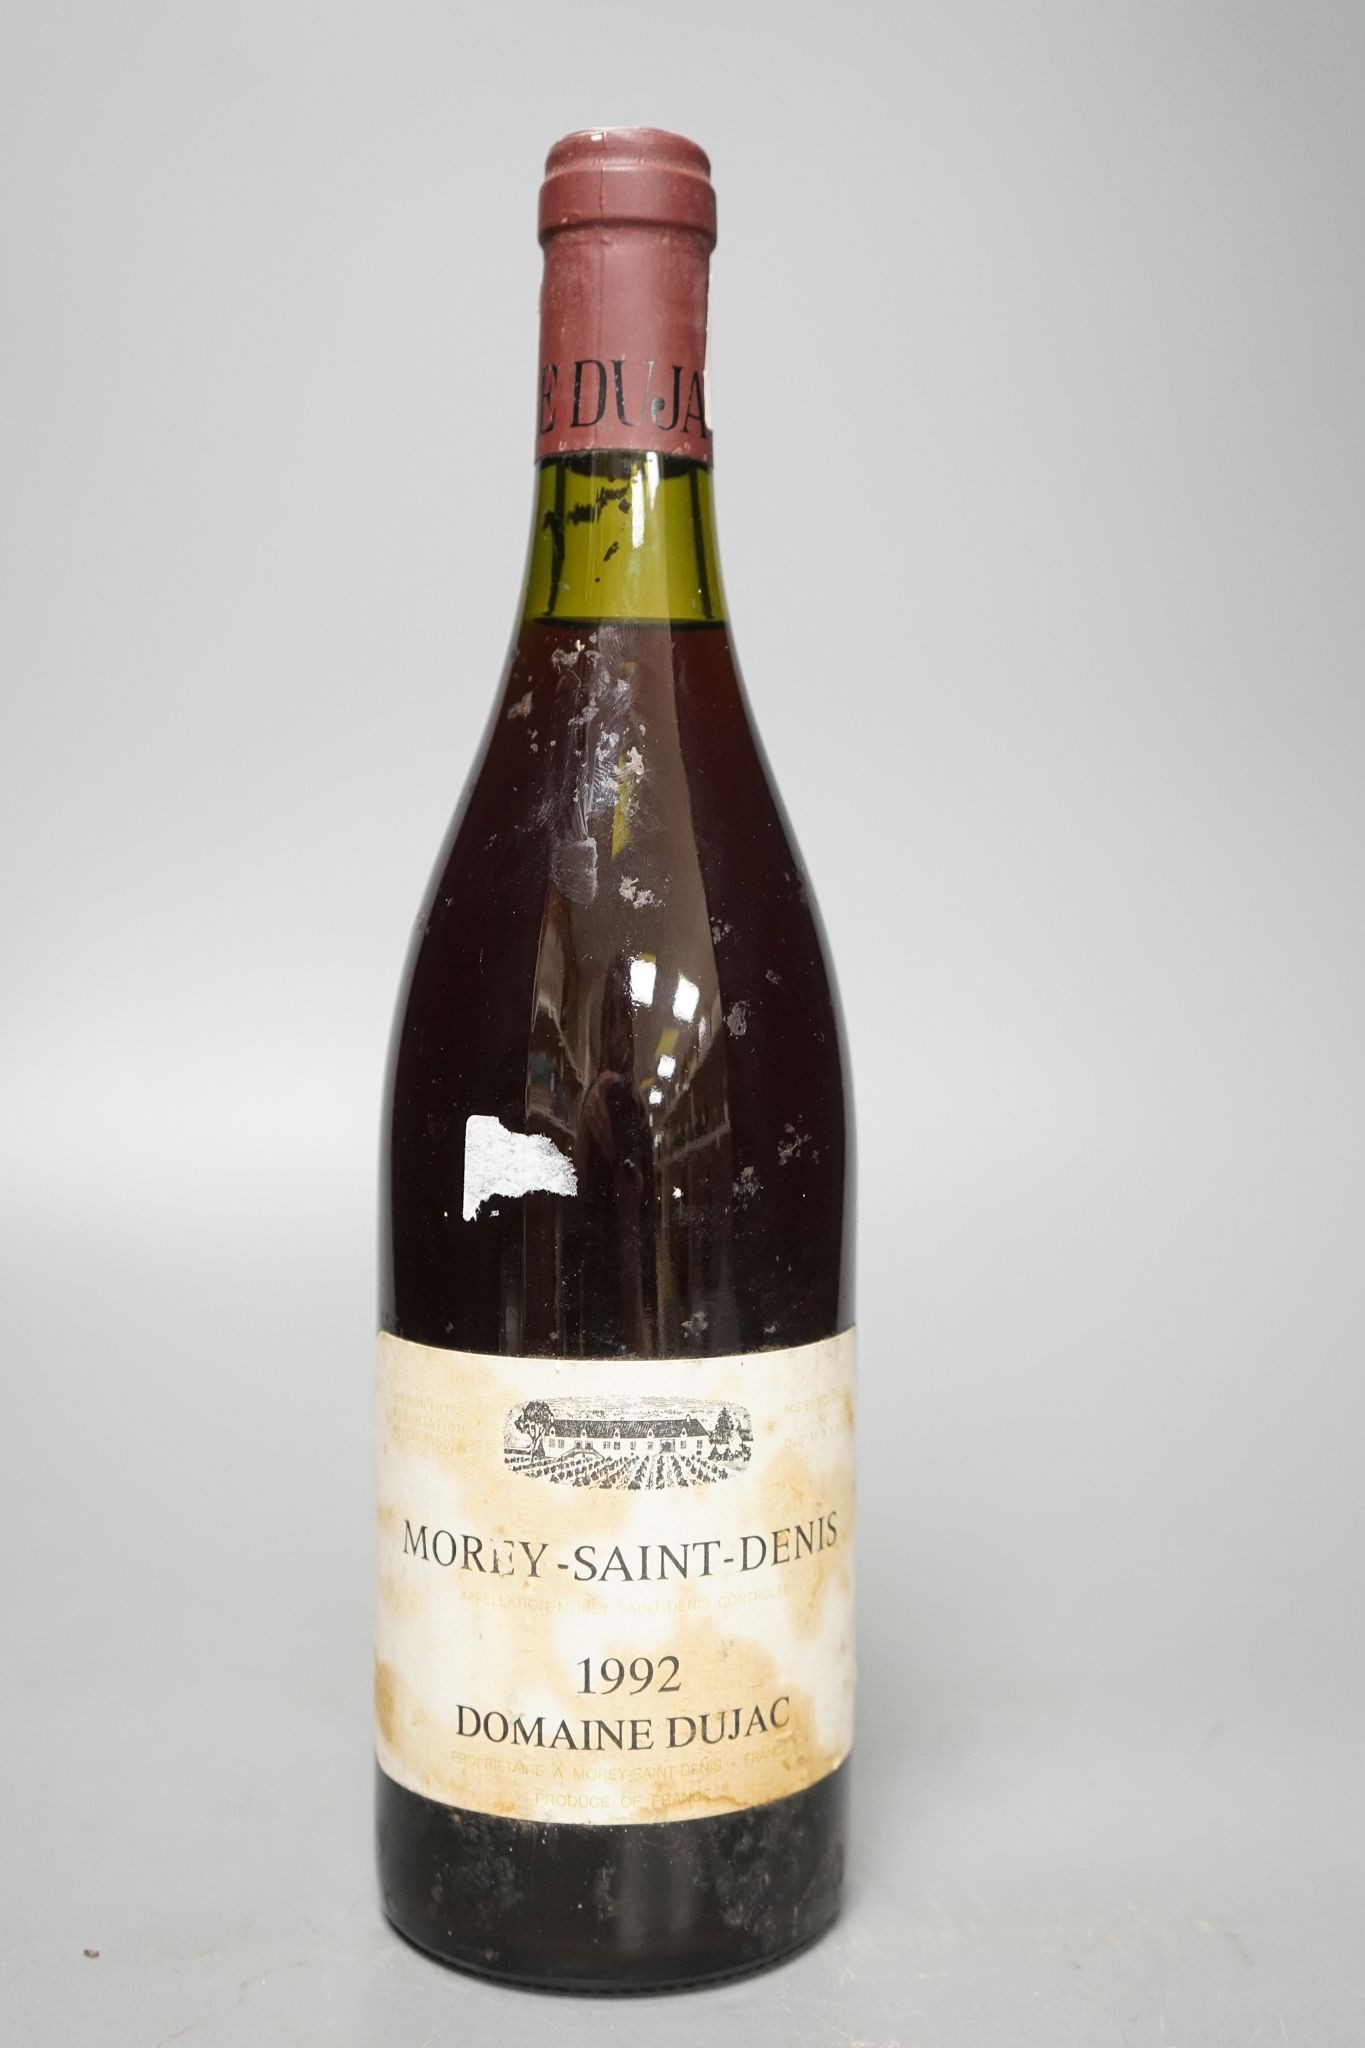 One bottle of Morey-St-Denis, 1992